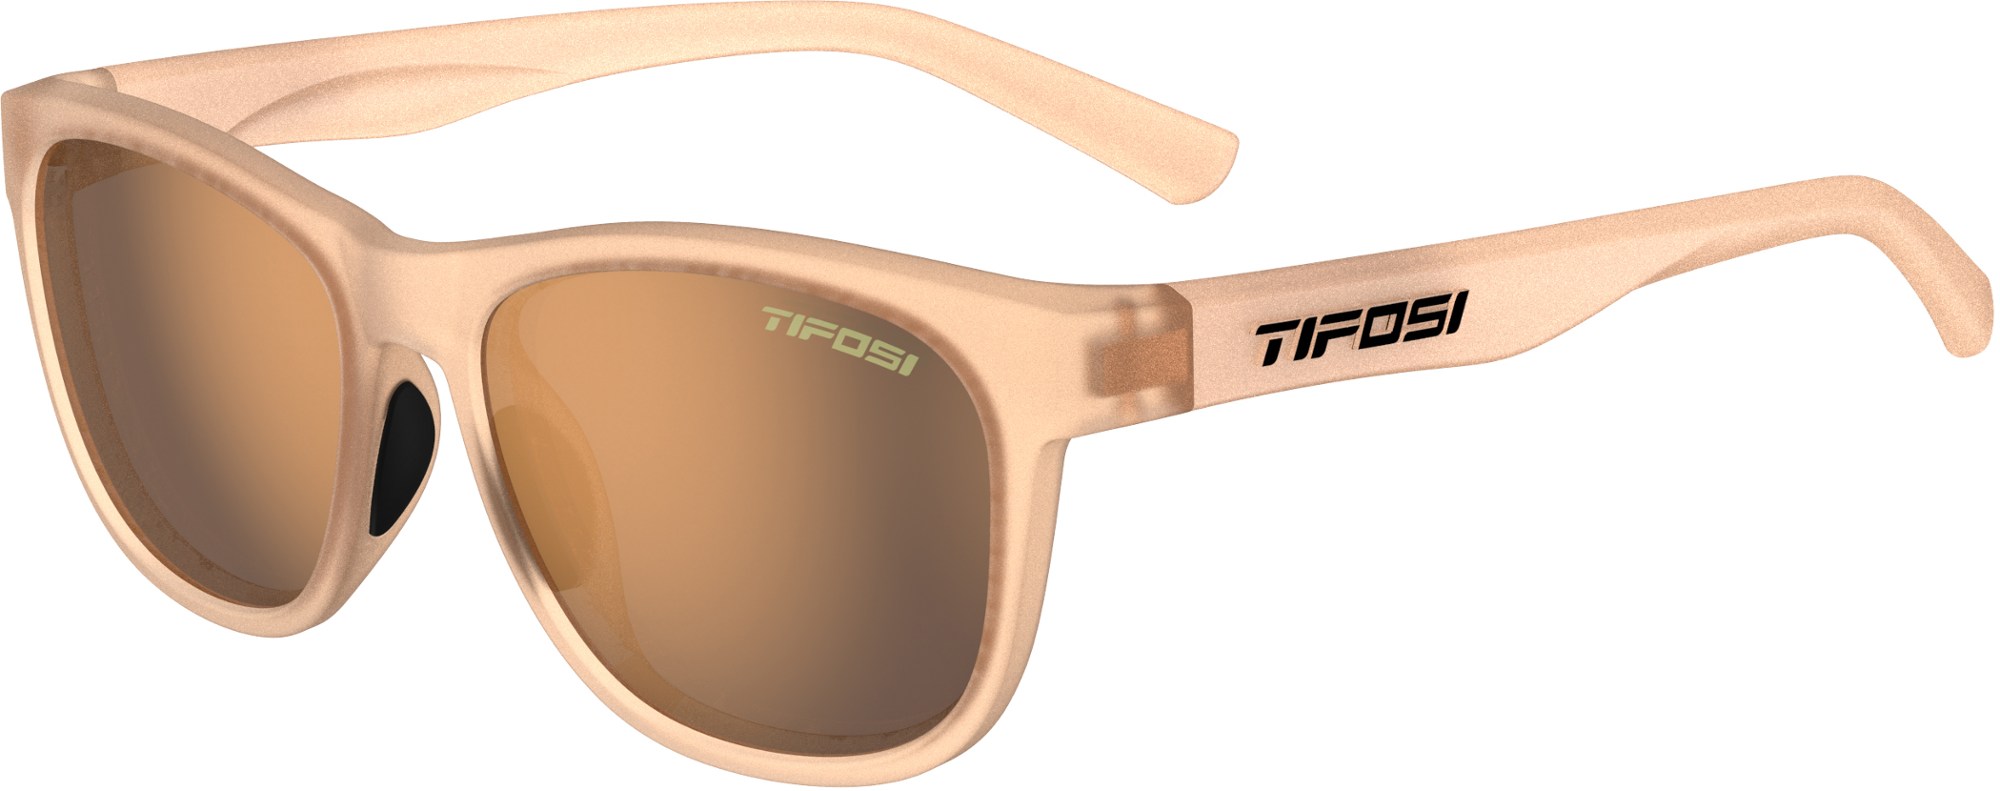 цена Поляризованные солнцезащитные очки Swank Tifosi, коричневый